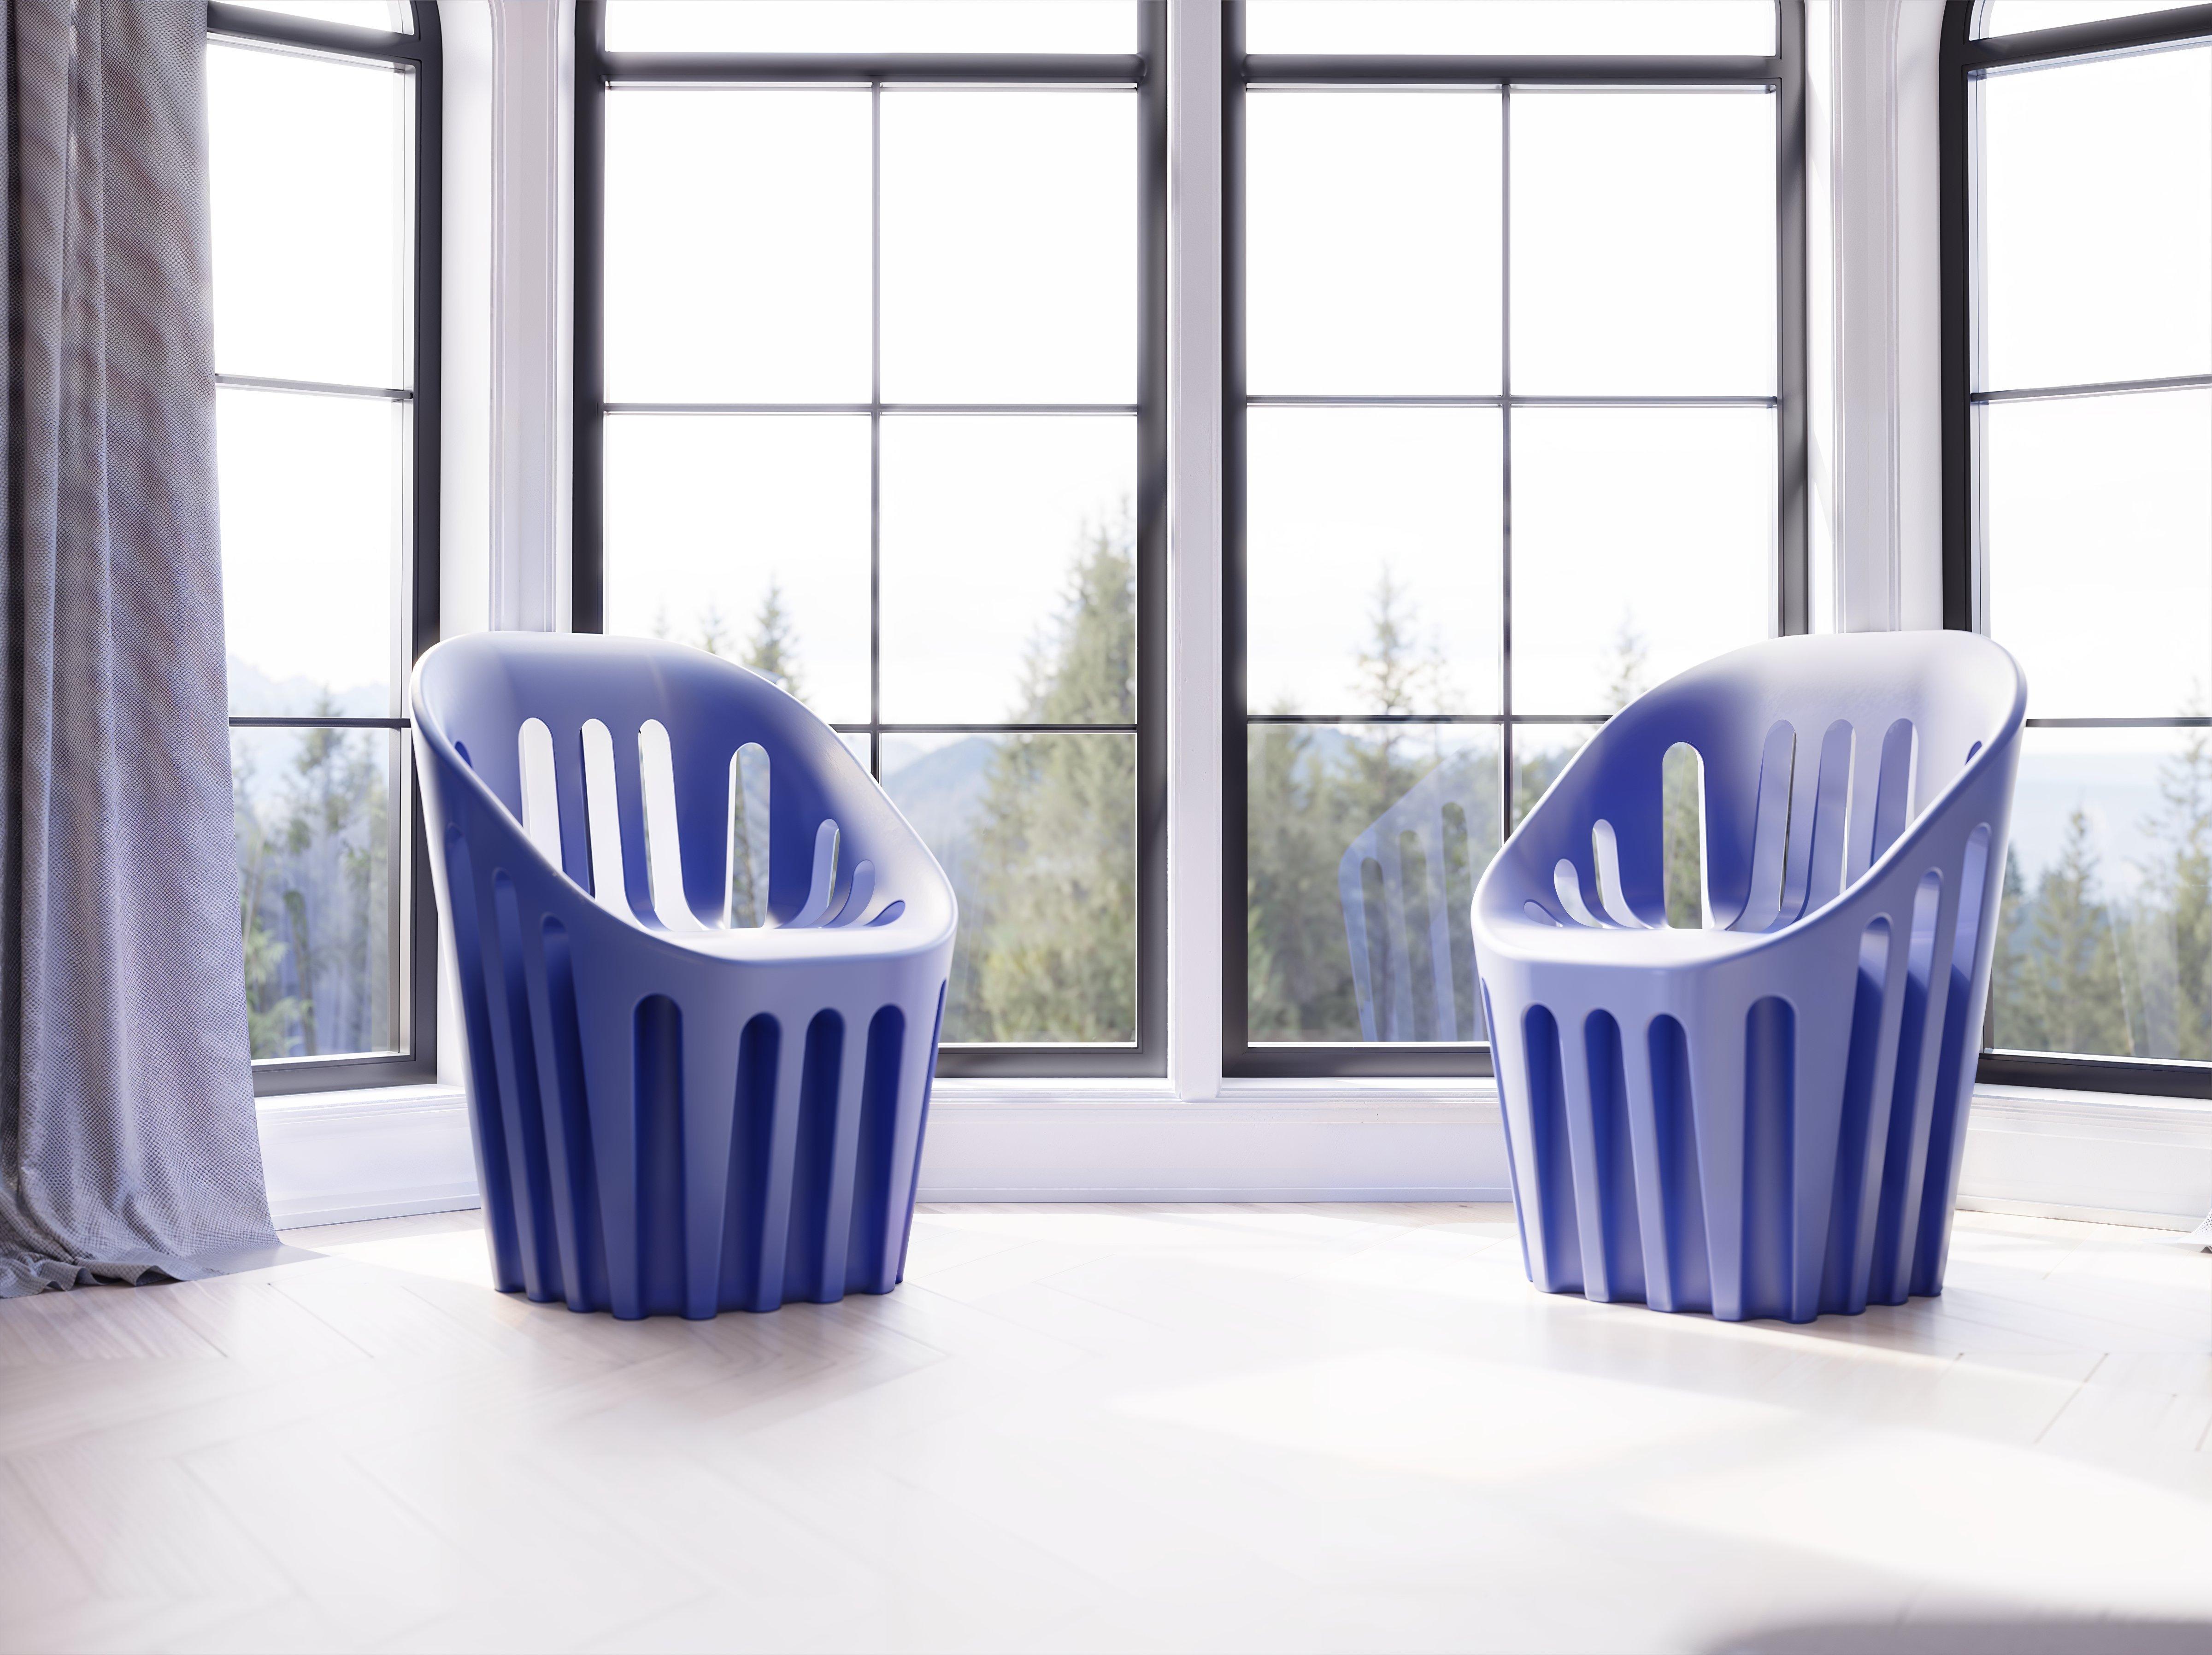 Coliseum-Stuhl in Limonengrün von Alvaro Uribe
Abmessungen: T 65 x B 66 x H 86 cm. Sitzhöhe: 45 cm.
MATERIALEN: Polyethylen.
Gewicht: 11 kg.

Erhältlich in verschiedenen Farbvarianten. Dieses Produkt ist für die Verwendung im Innen- und Außenbereich